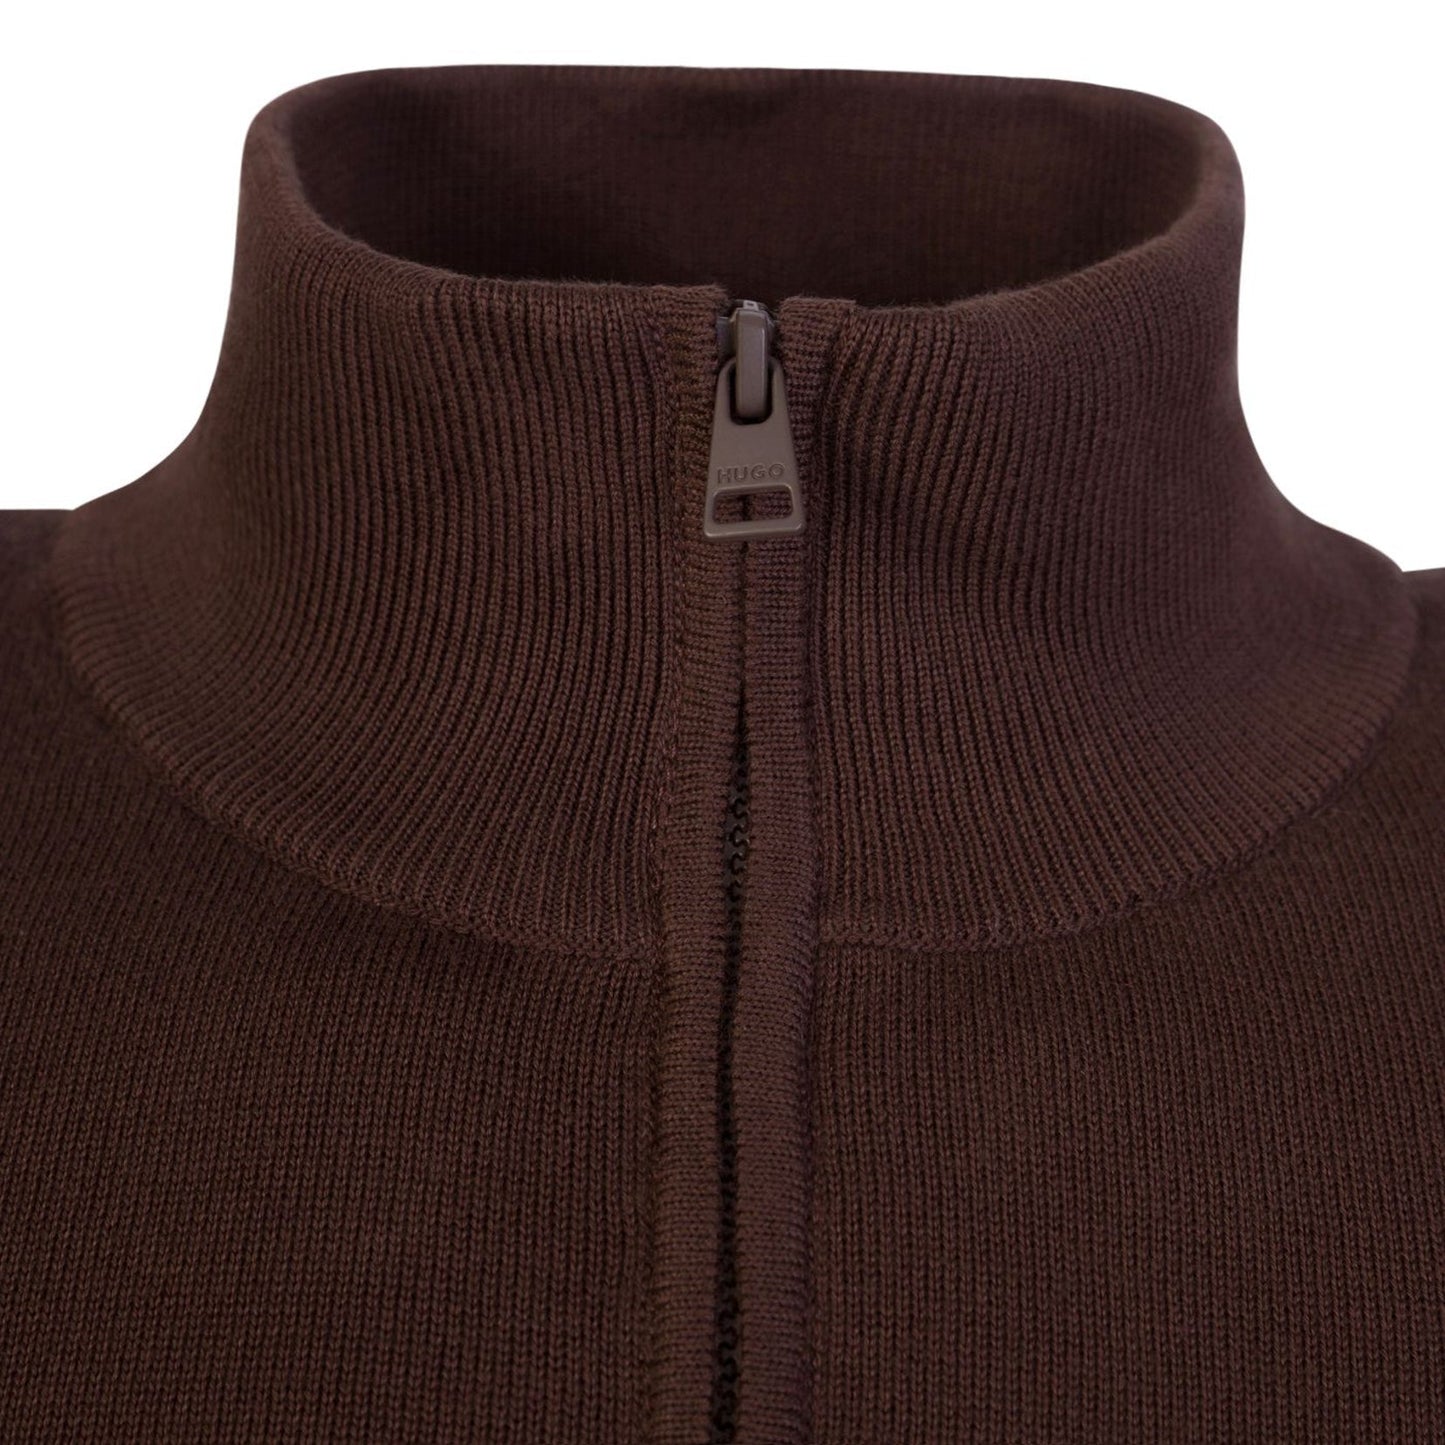 Hugo San-Quintus 1/4 Zip Knitwear - 201 Brown - Escape Menswear